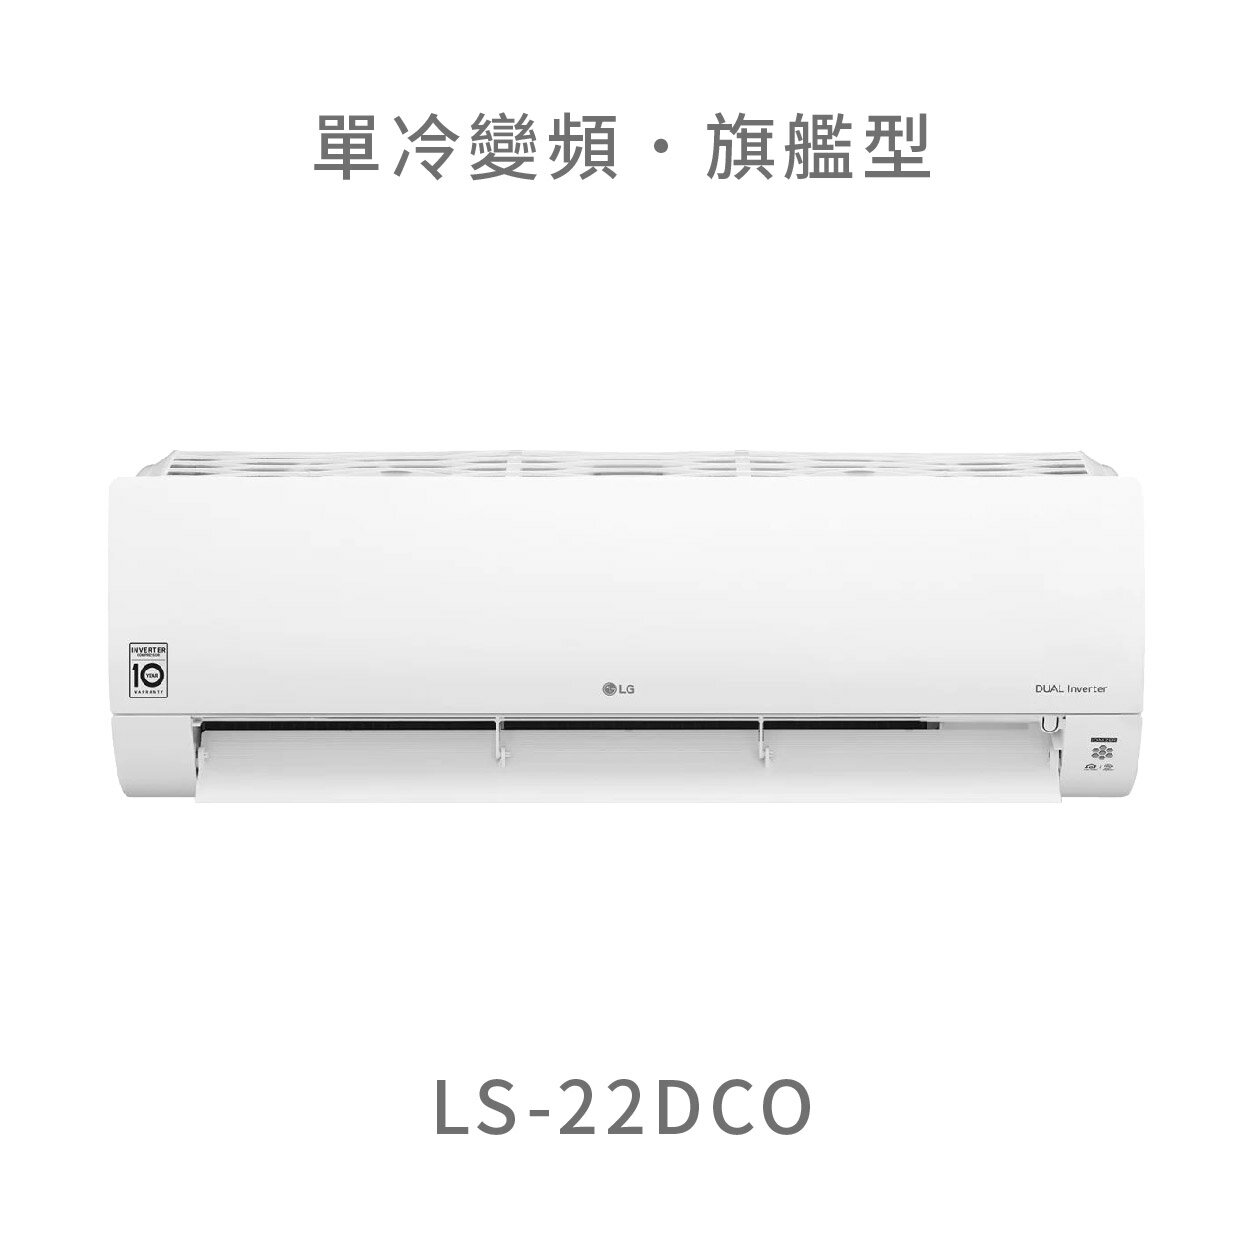 【點數10%回饋】【桃園含標準安裝】LG LS-22DCO 2.2kw WiFi雙迴轉變頻空調 - 旗艦單冷型